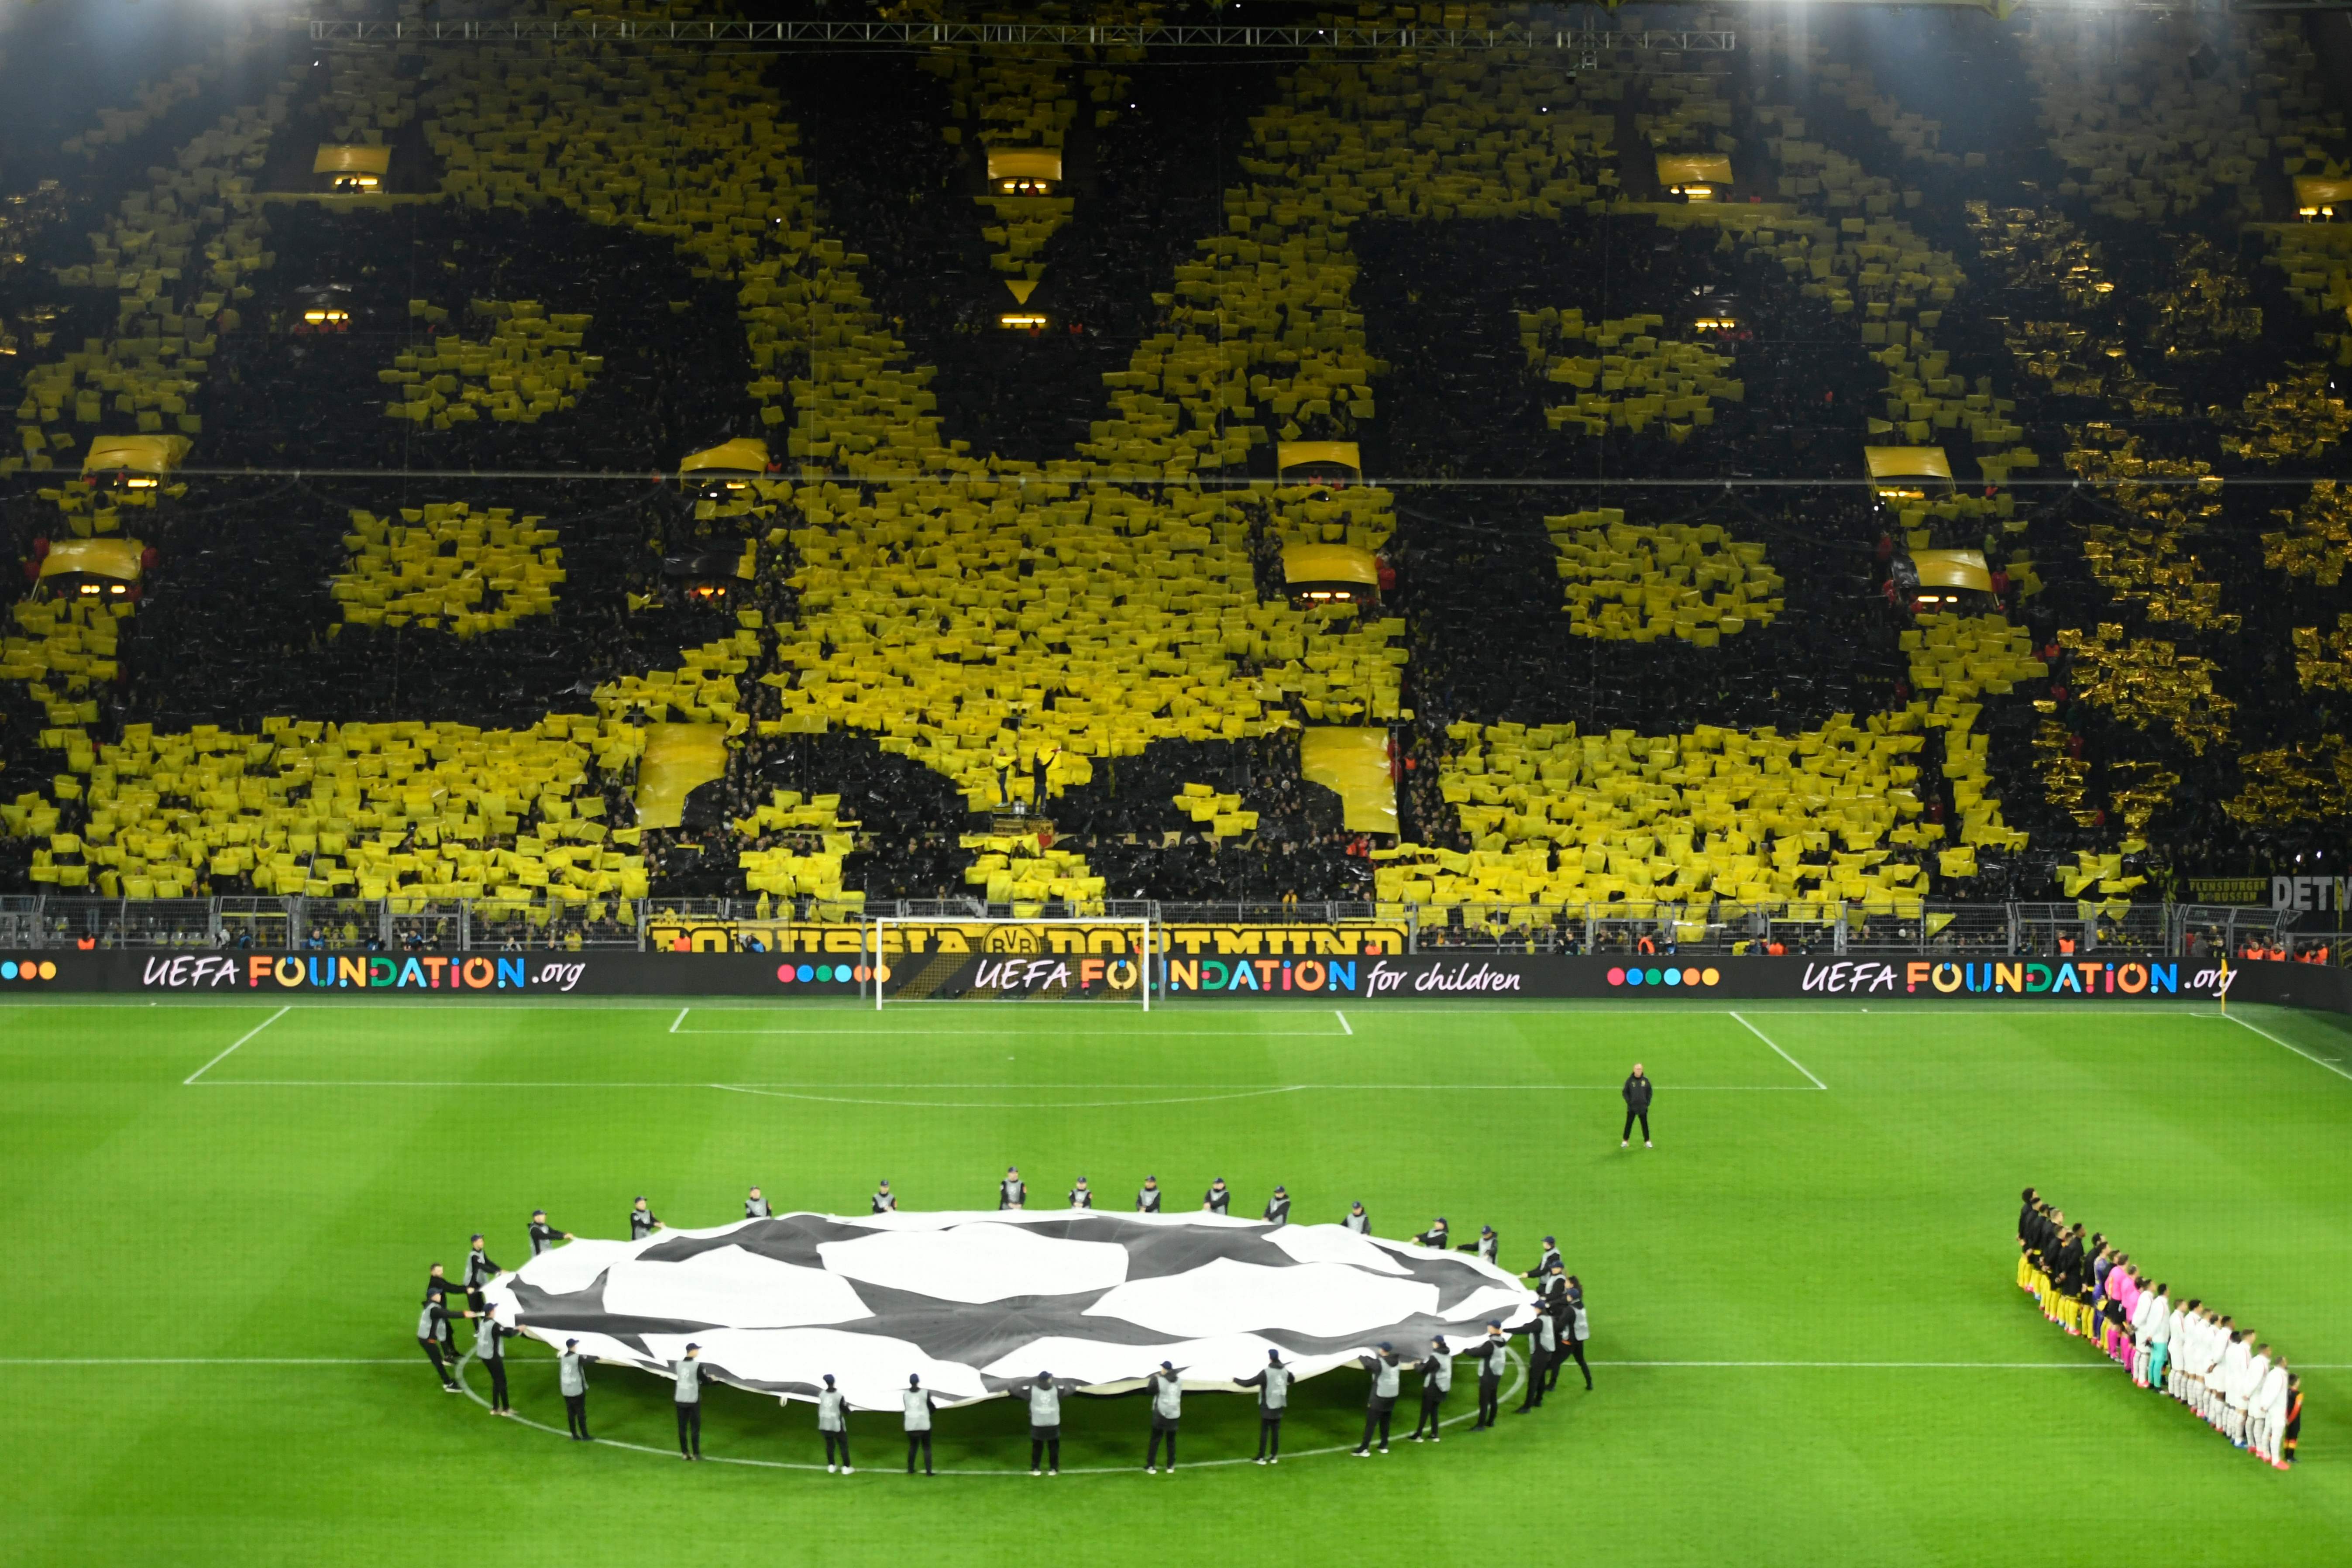 ¿Cómo se llama la hinchada del Borussia